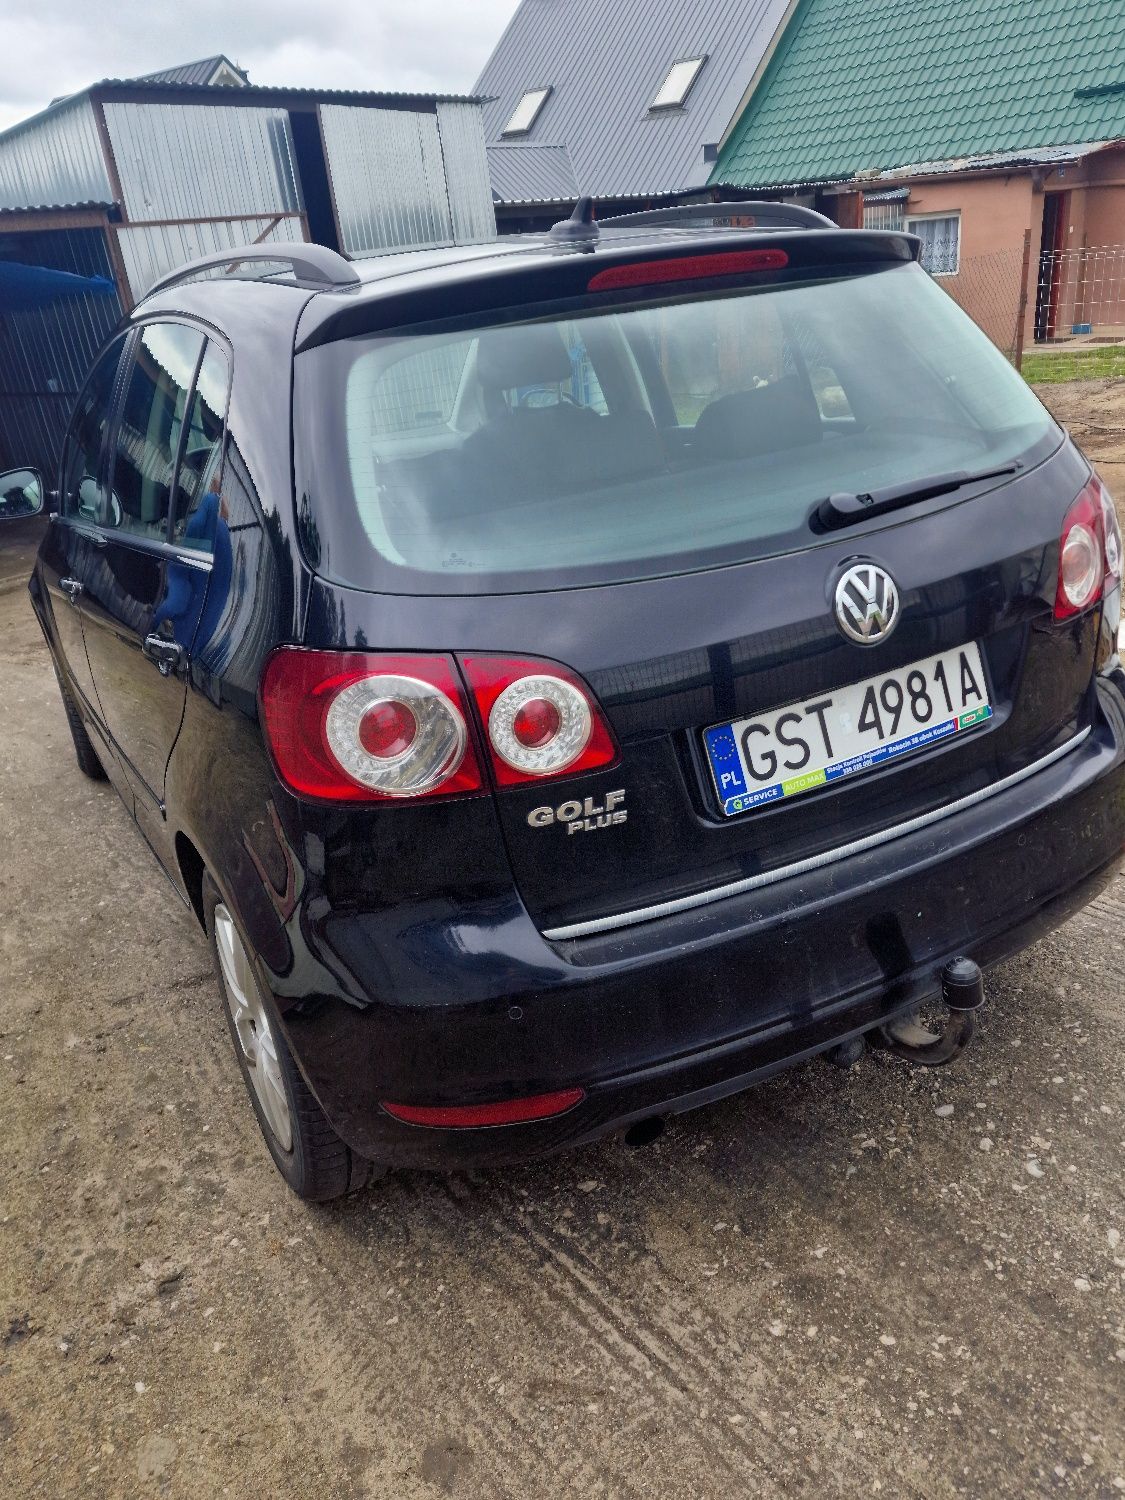 Volkswagen Golf 6 Plus